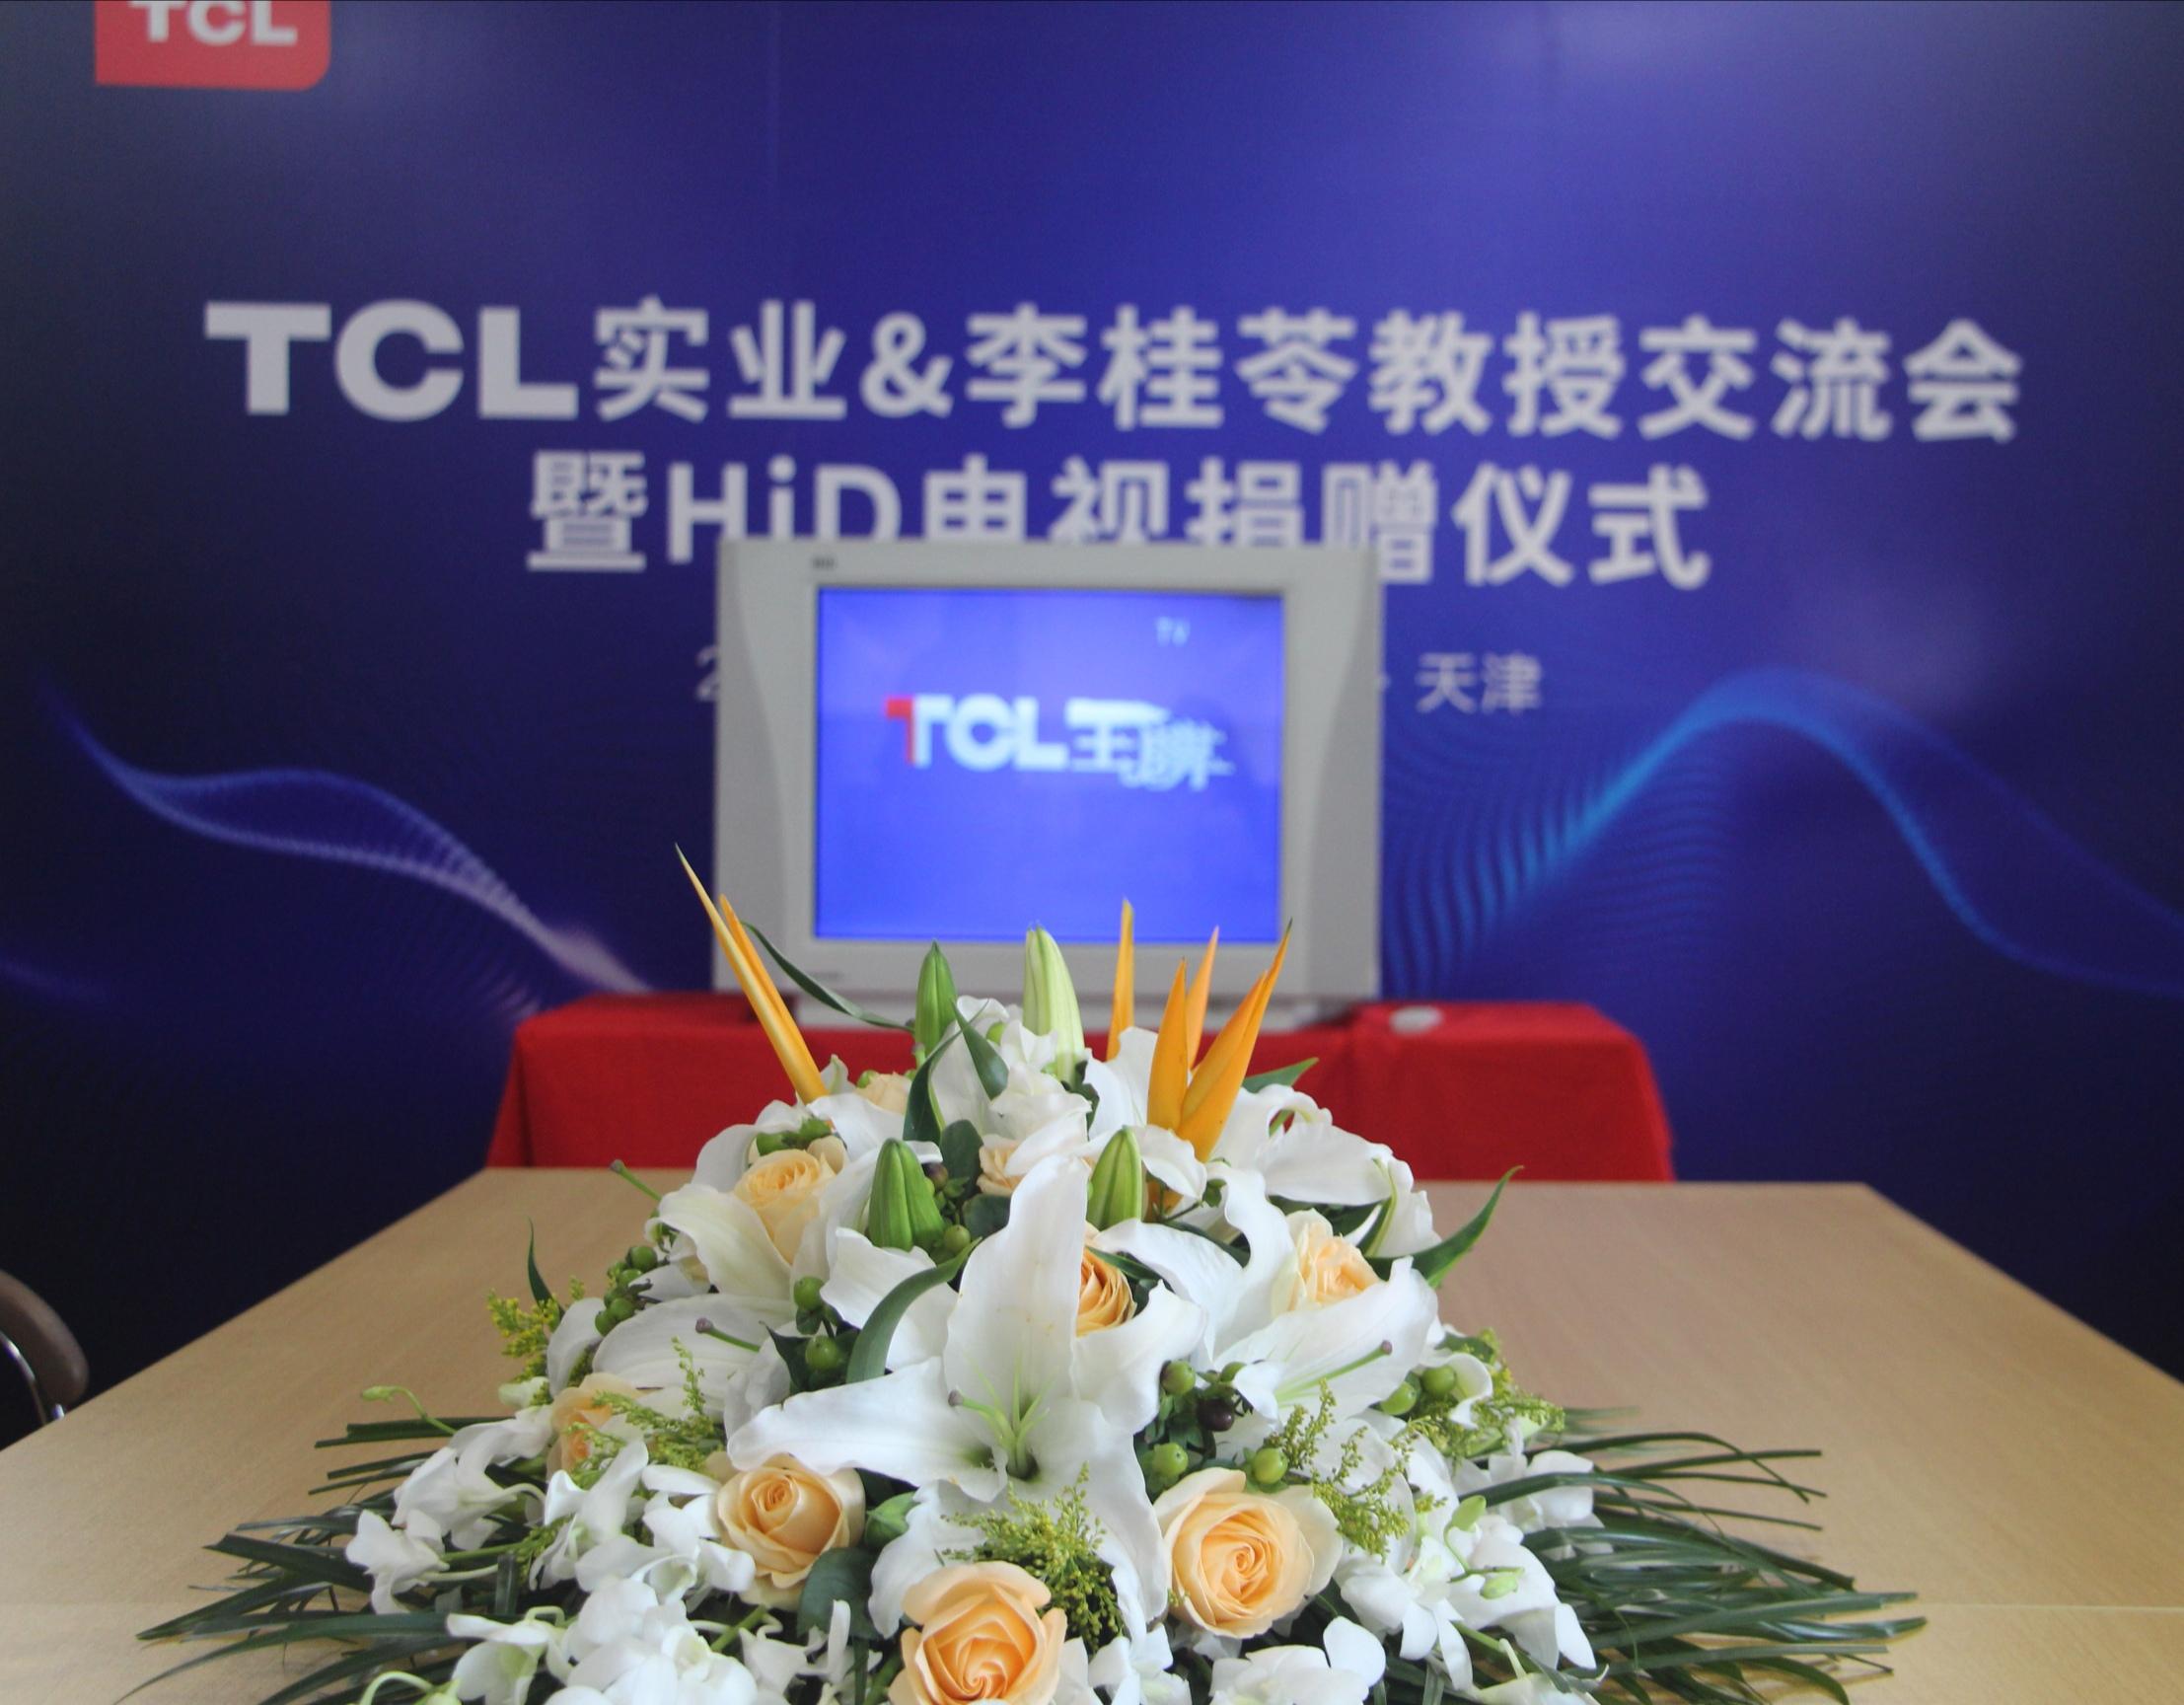 电视研究领域资深学者天津大学李桂苓教授荣获“TCL产品荣誉终身体验师”称号